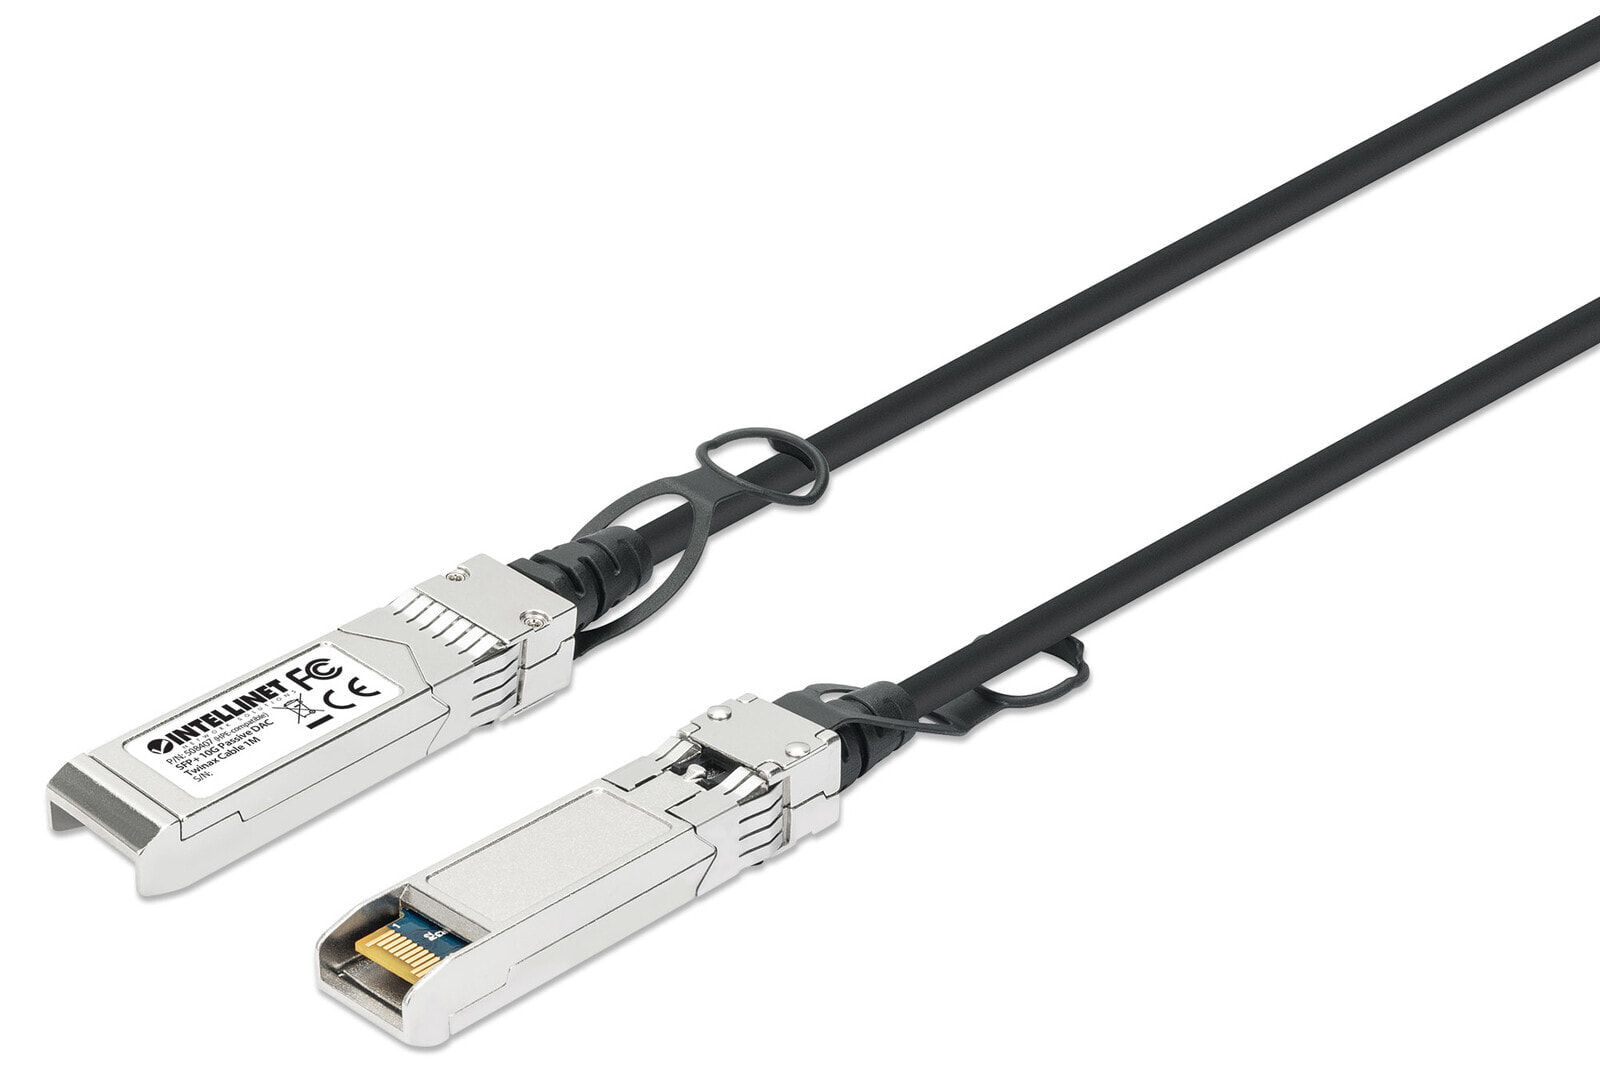 Intellinet 508407 волоконно-оптический кабель 1 m SFP+ Черный, Серебристый